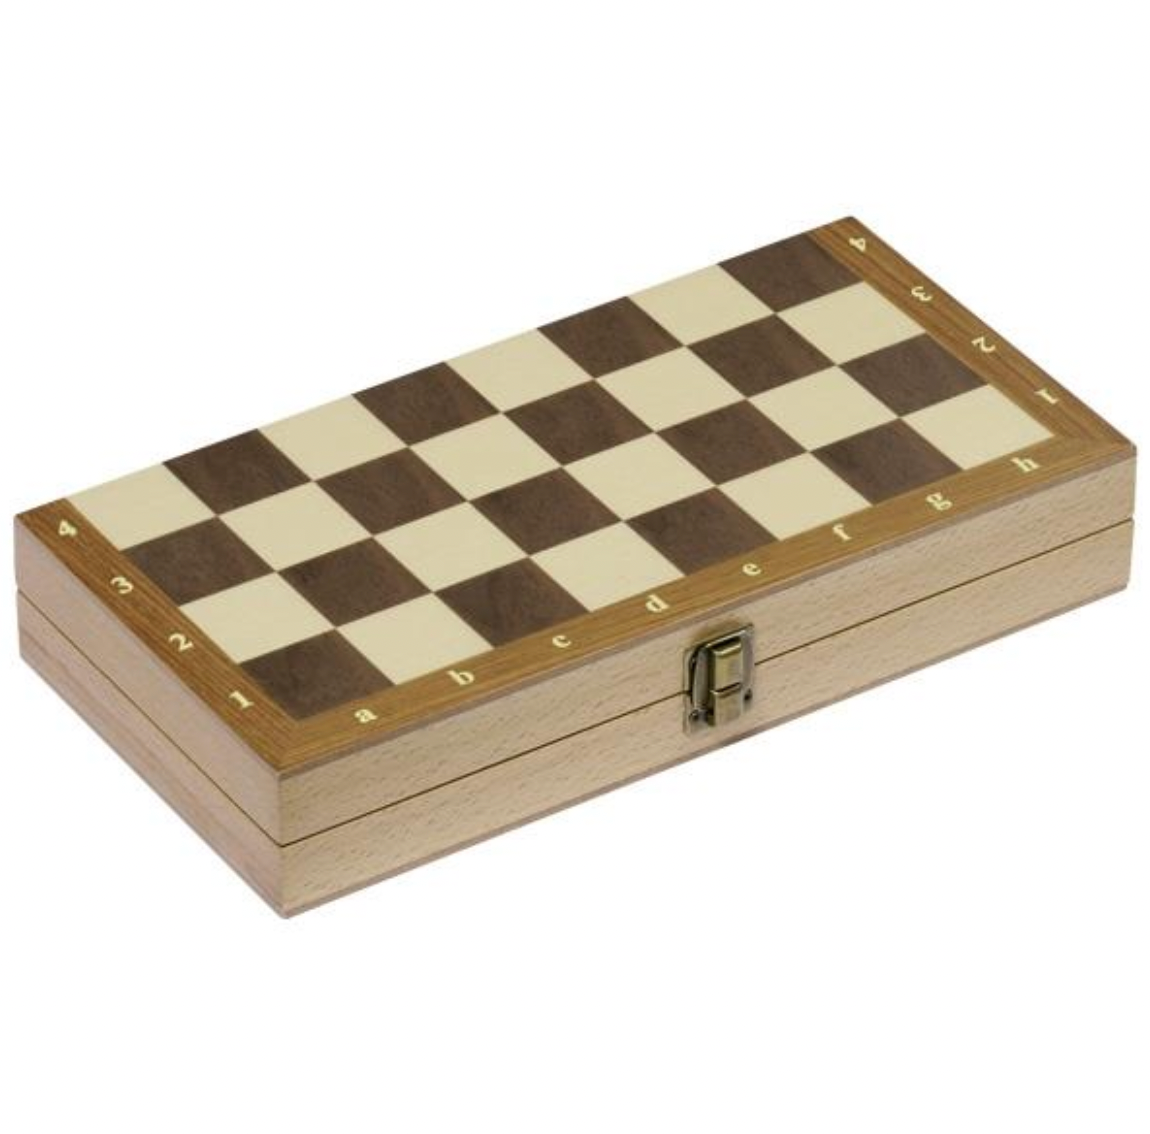 Goki- Chess Set with Hinged Case